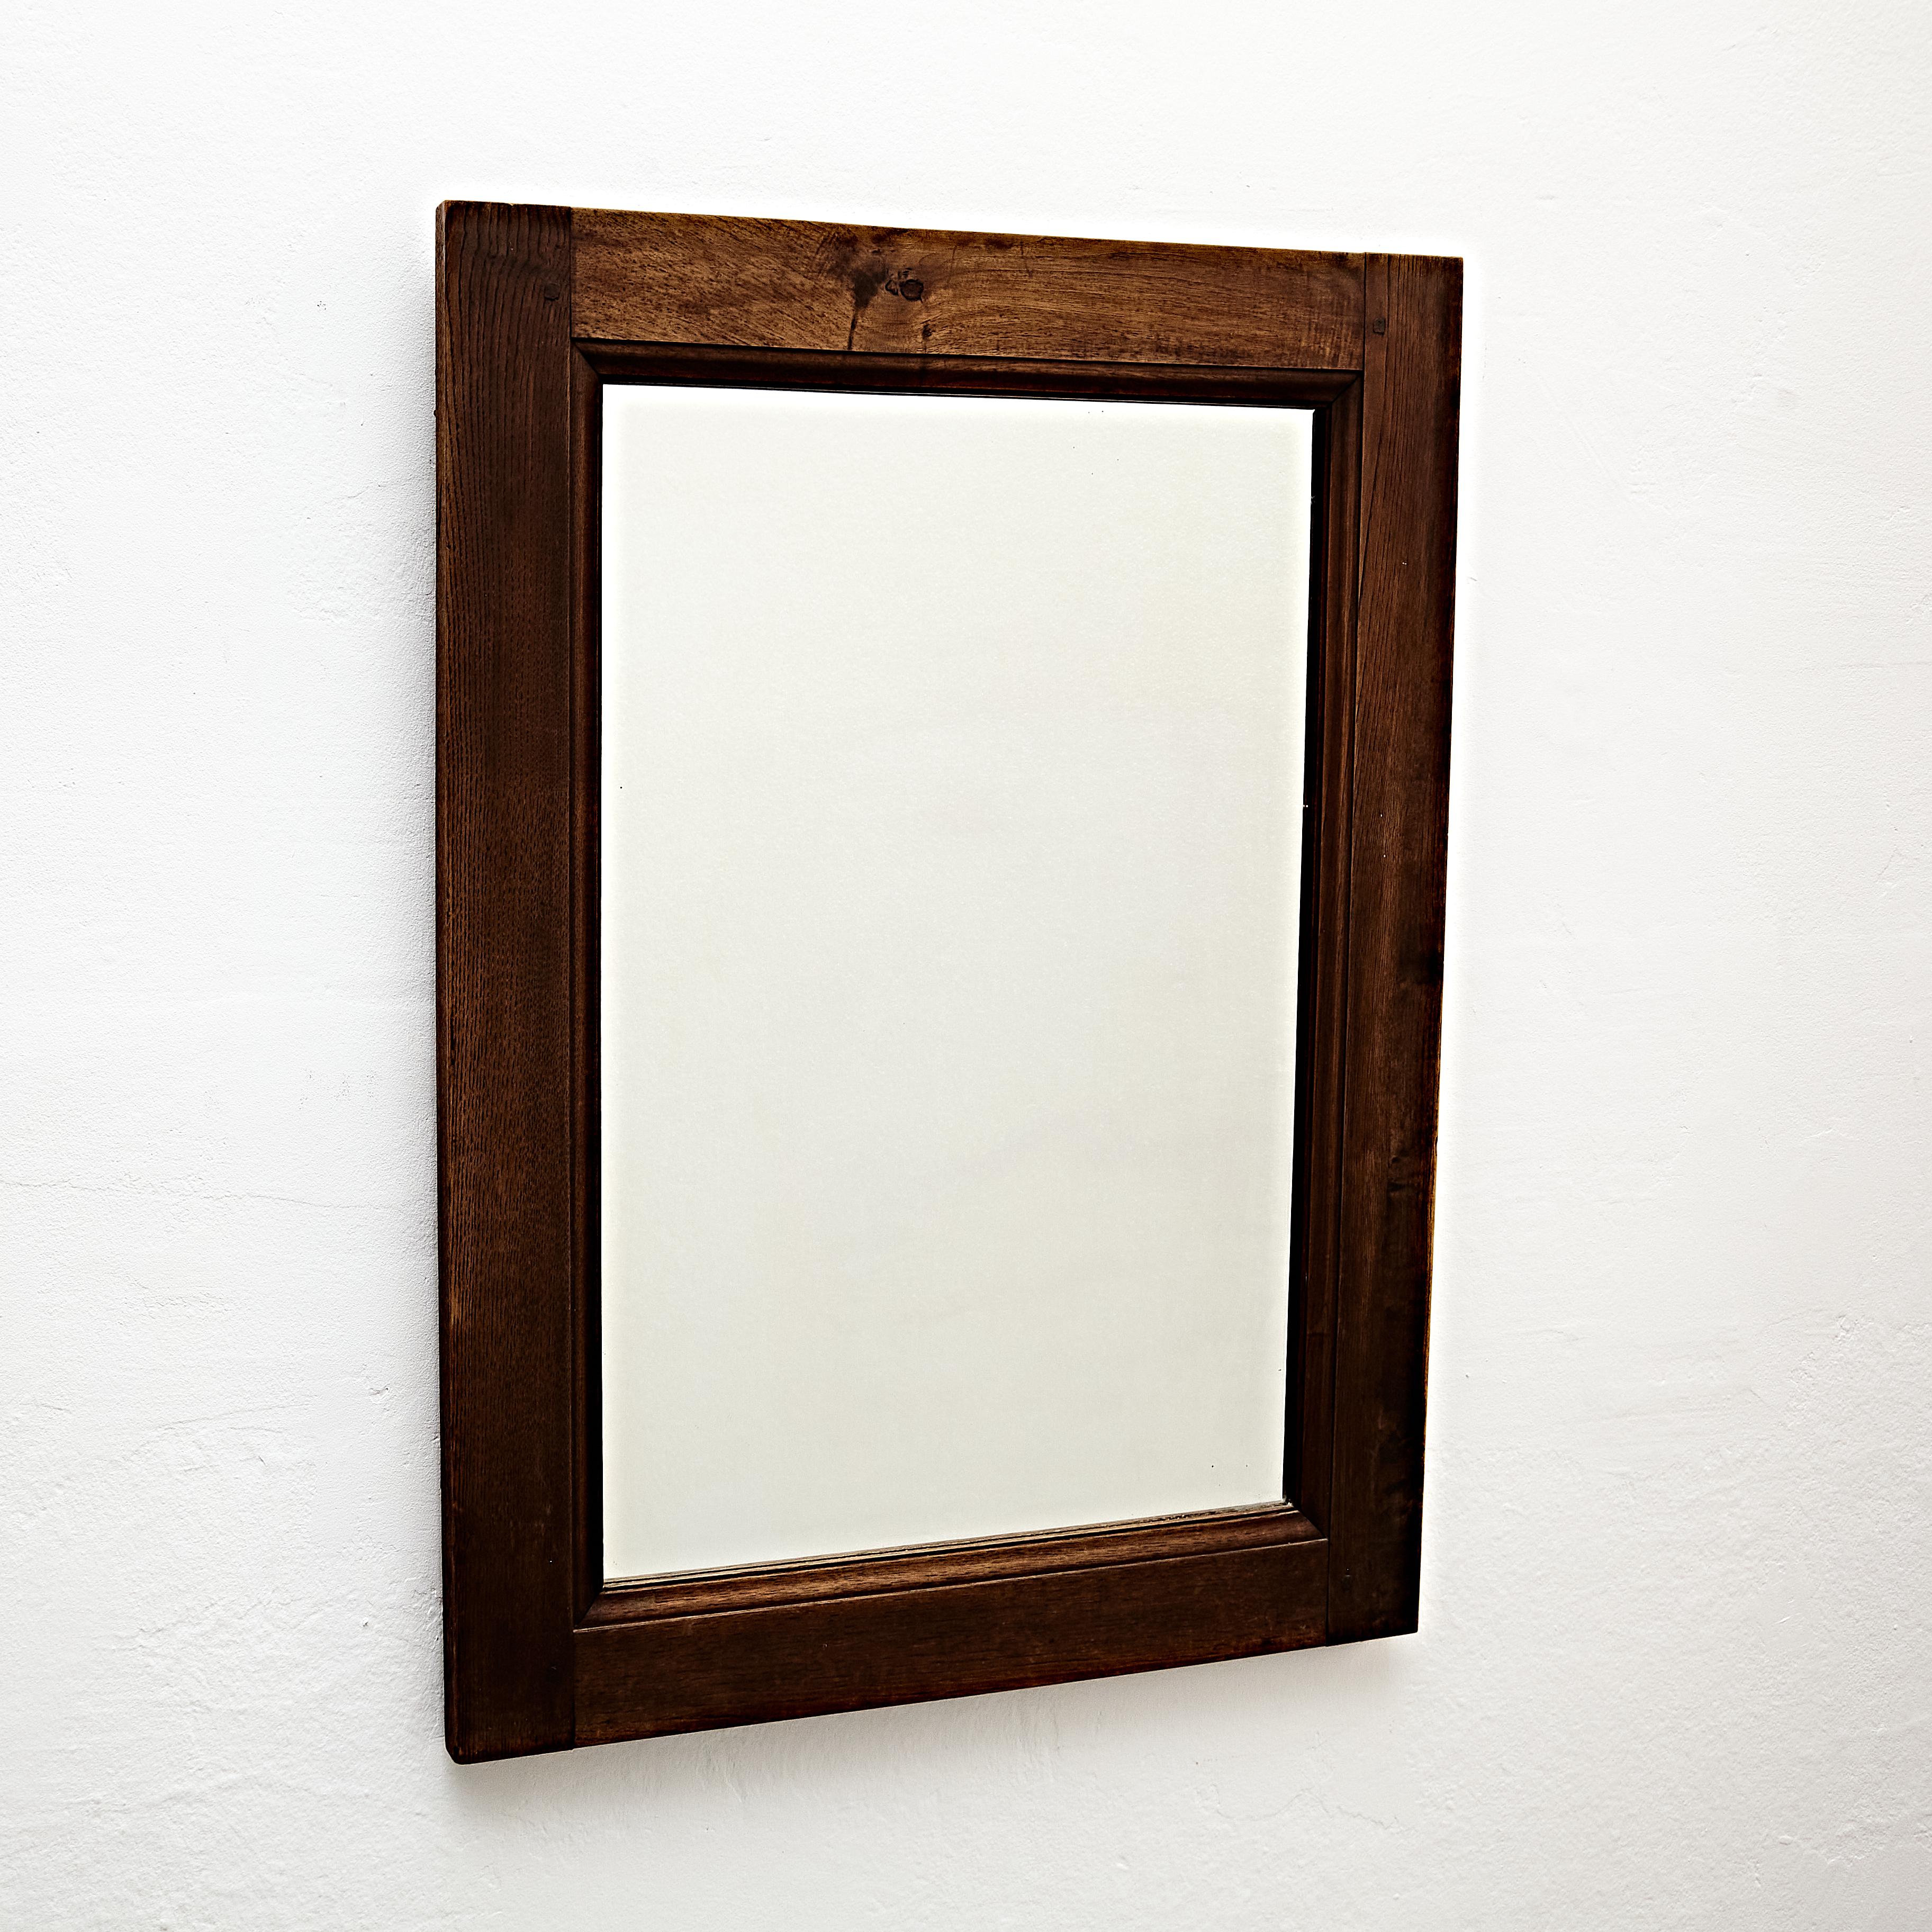 Mid Century Modern Rustic Wood Mirror.

Hergestellt in Frankreich, um 1960.

In ursprünglichem Zustand mit geringen Gebrauchsspuren, die dem Alter und dem Gebrauch entsprechen, wobei eine schöne Patina erhalten bleibt.

MATERIALIEN: 
Holz